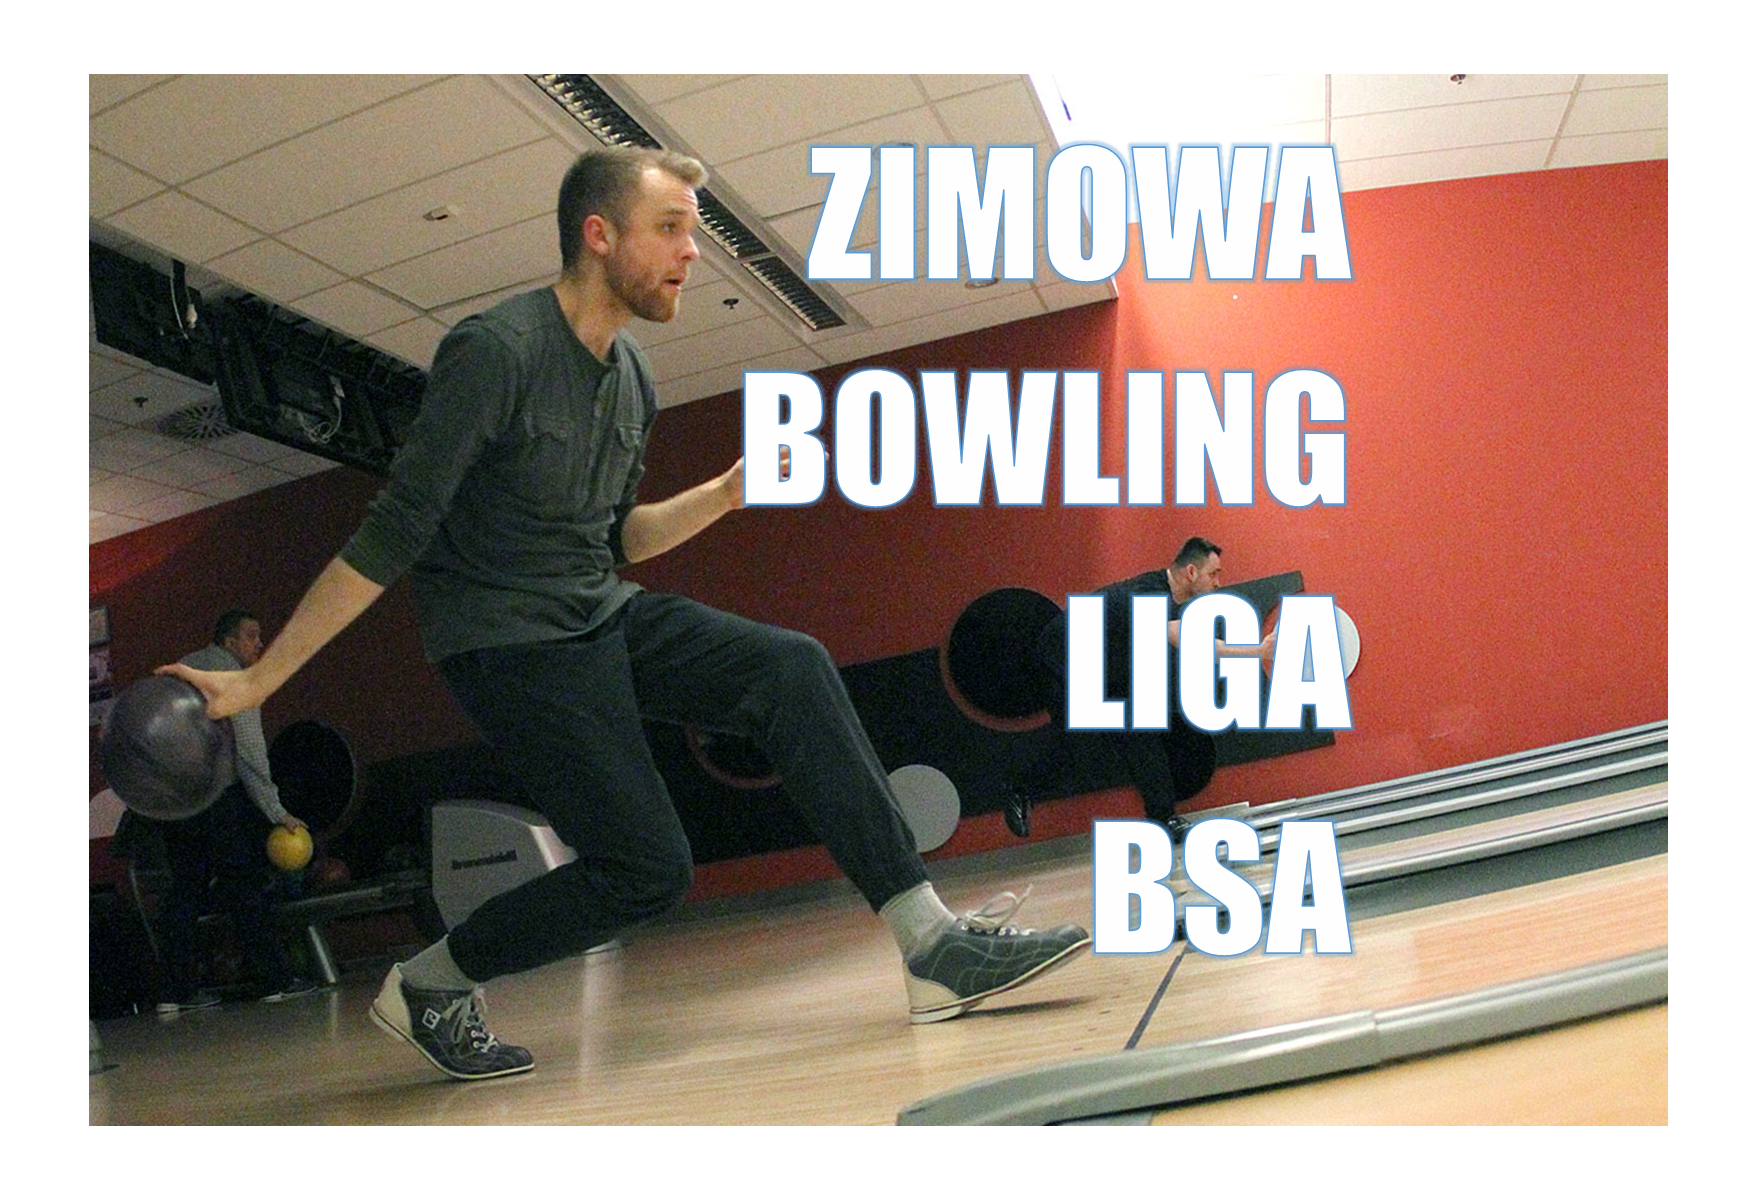 Zimowa Bolwling Liga BSA 2021